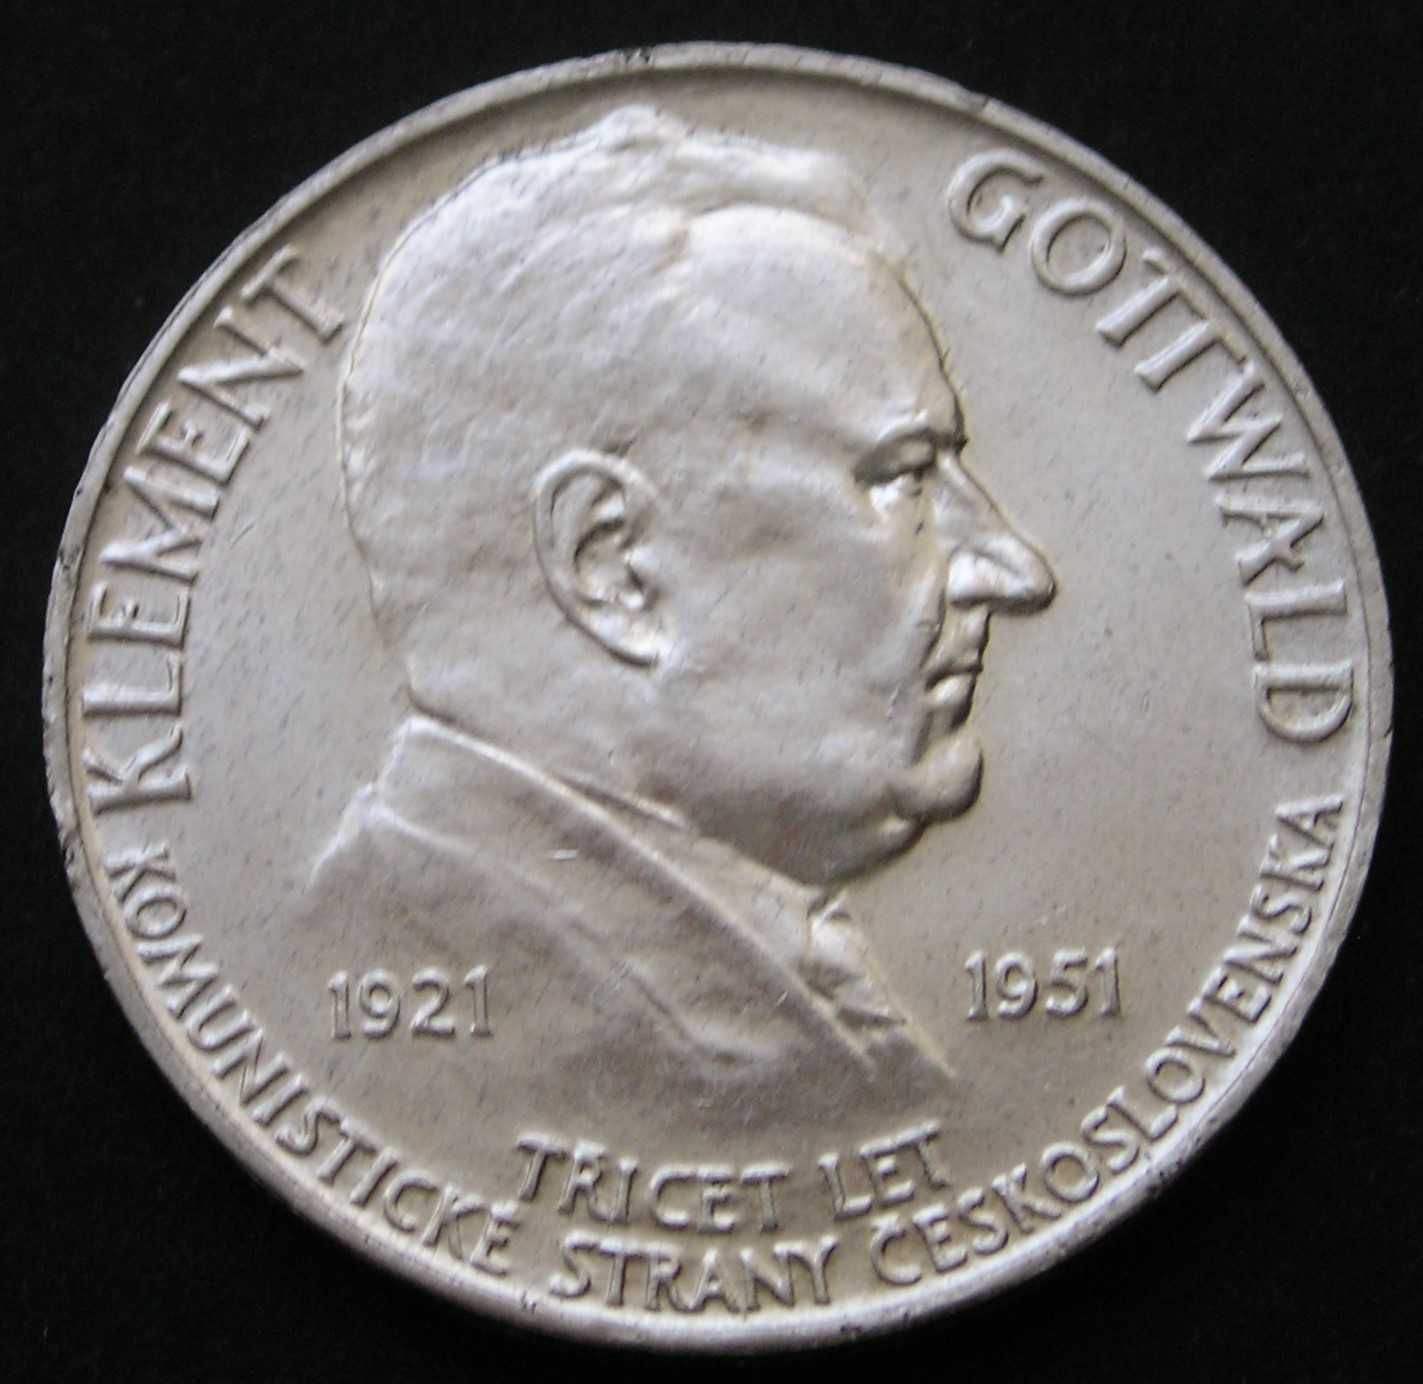 Czechosłowacja 100 koron 1951 - Gottwald - srebro